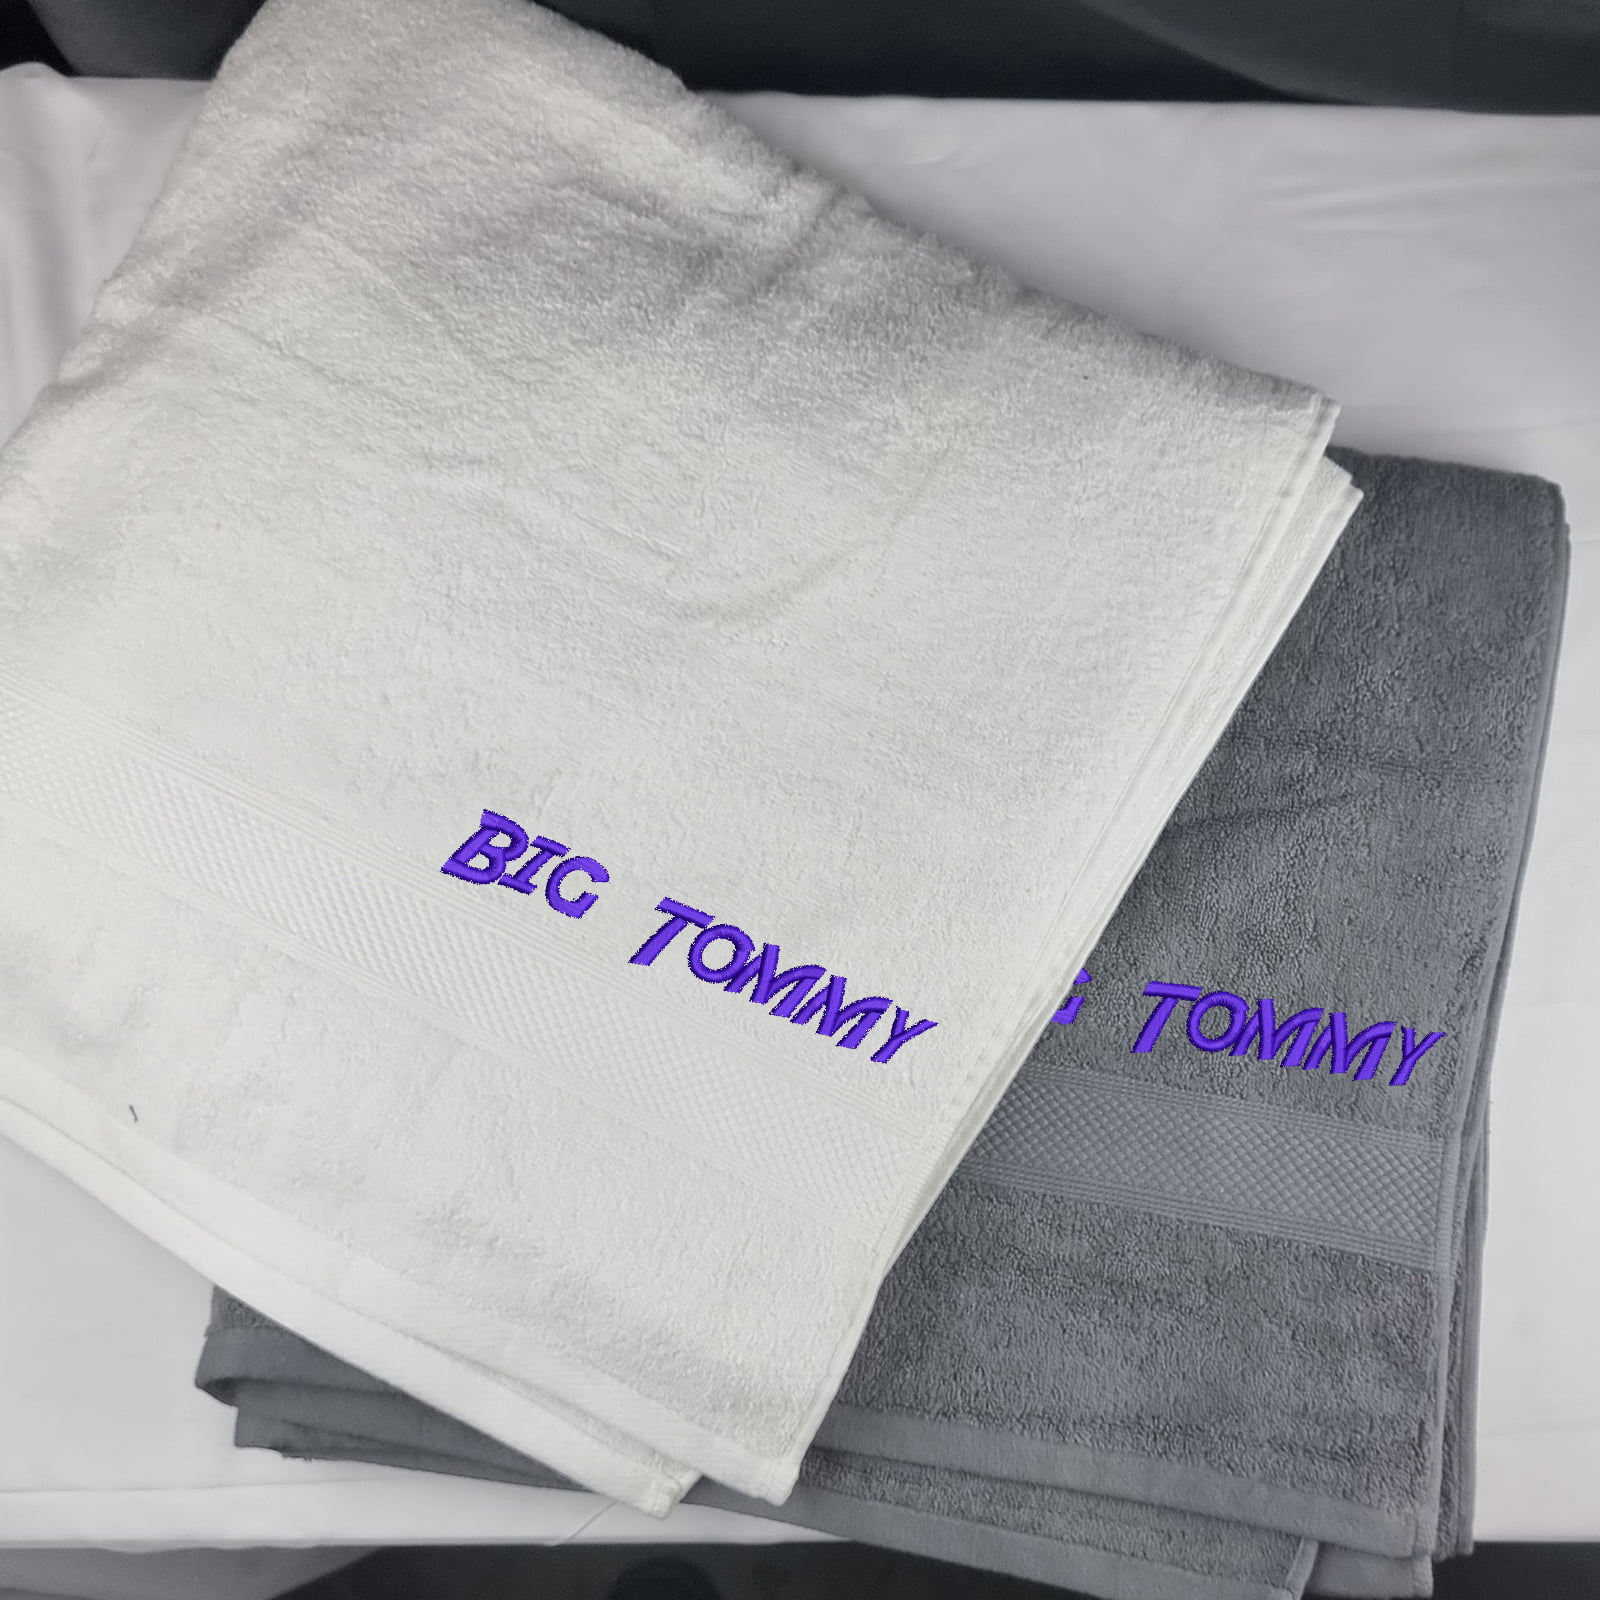 Personalised mega towel